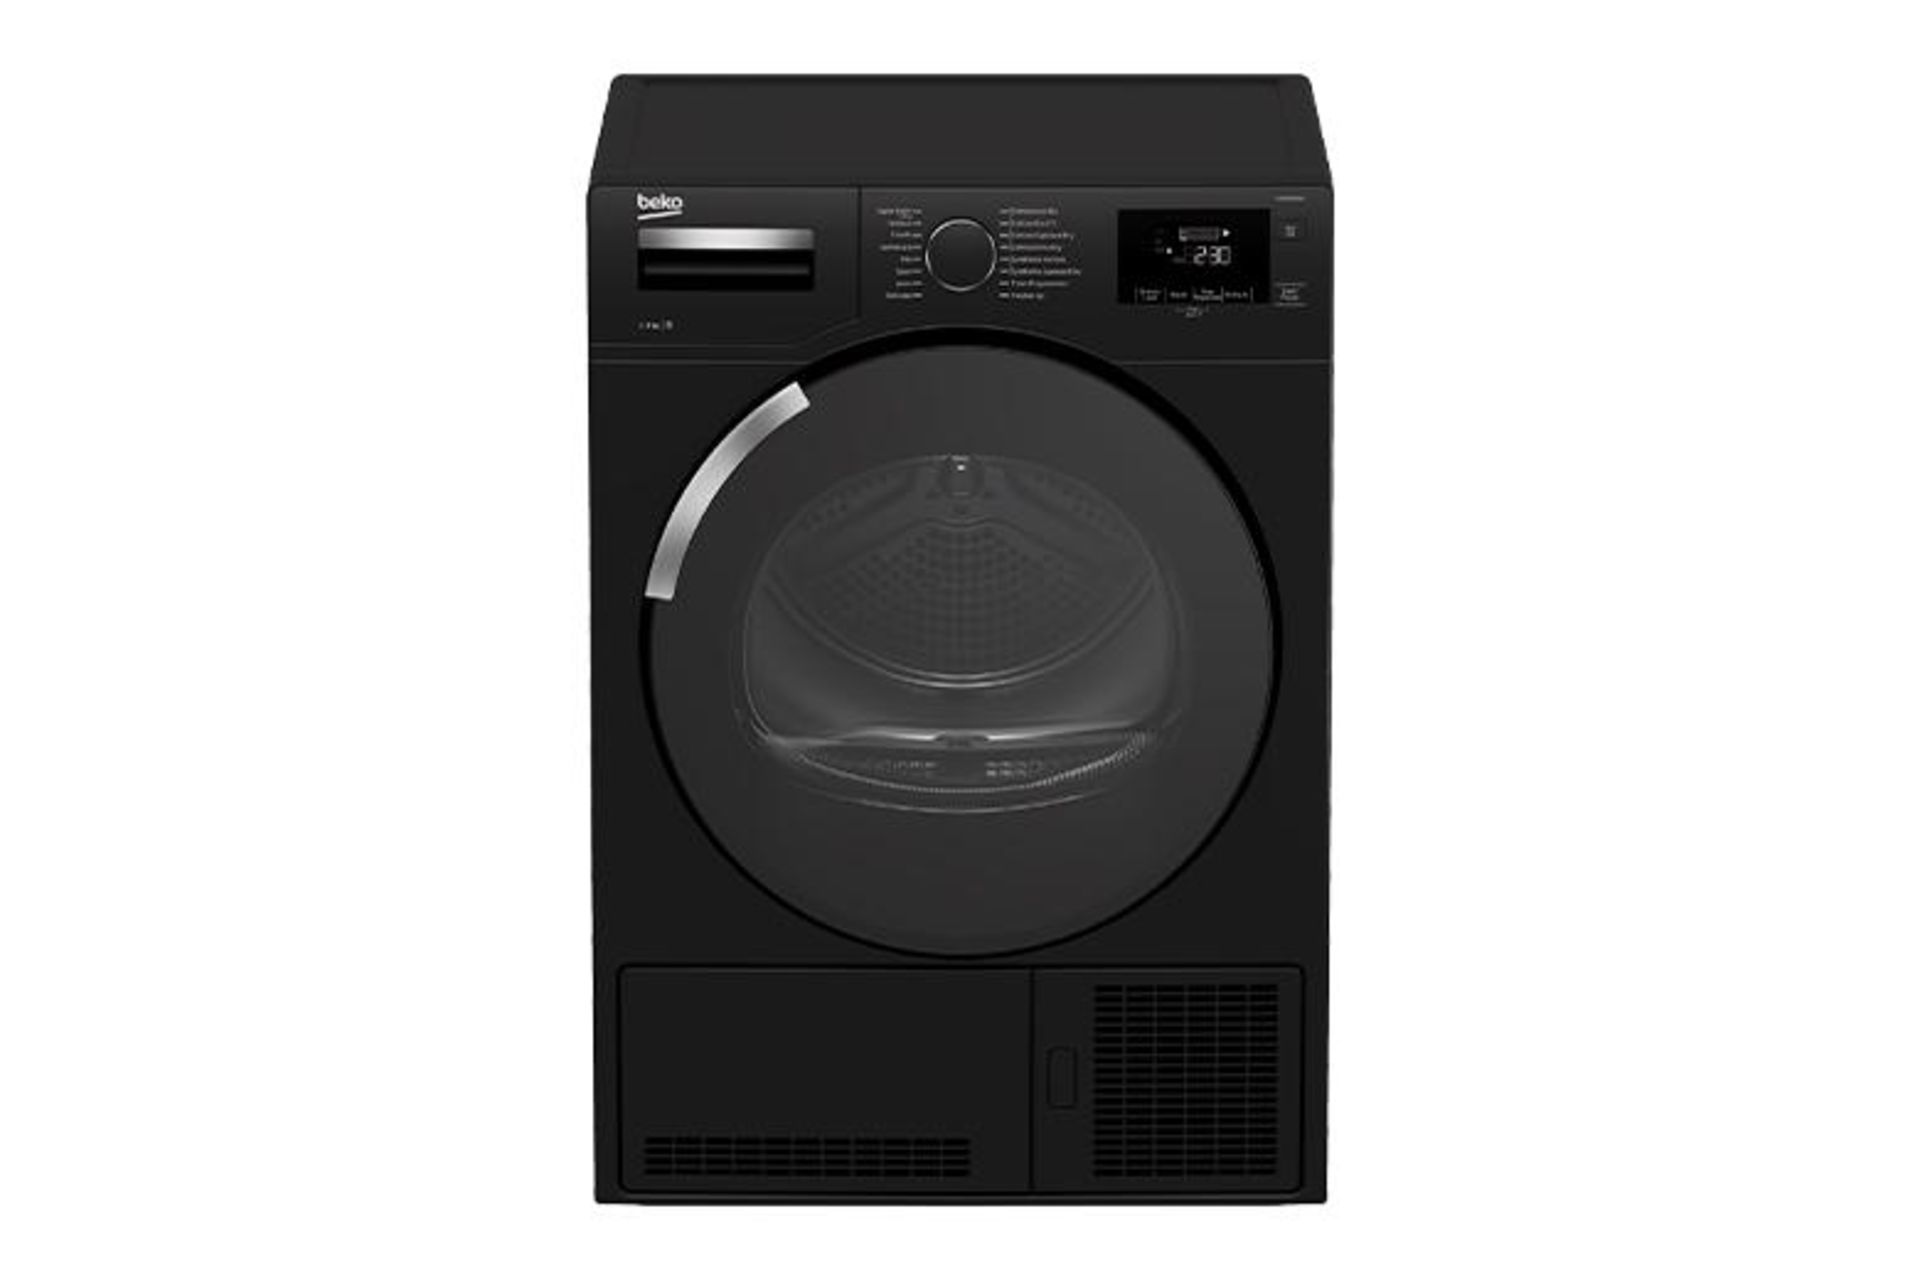 Mixed Lot of Seven Refurbished Appliances Including Beko 9KG Sensor Dryer in Black, manufacturer’s - Image 3 of 7